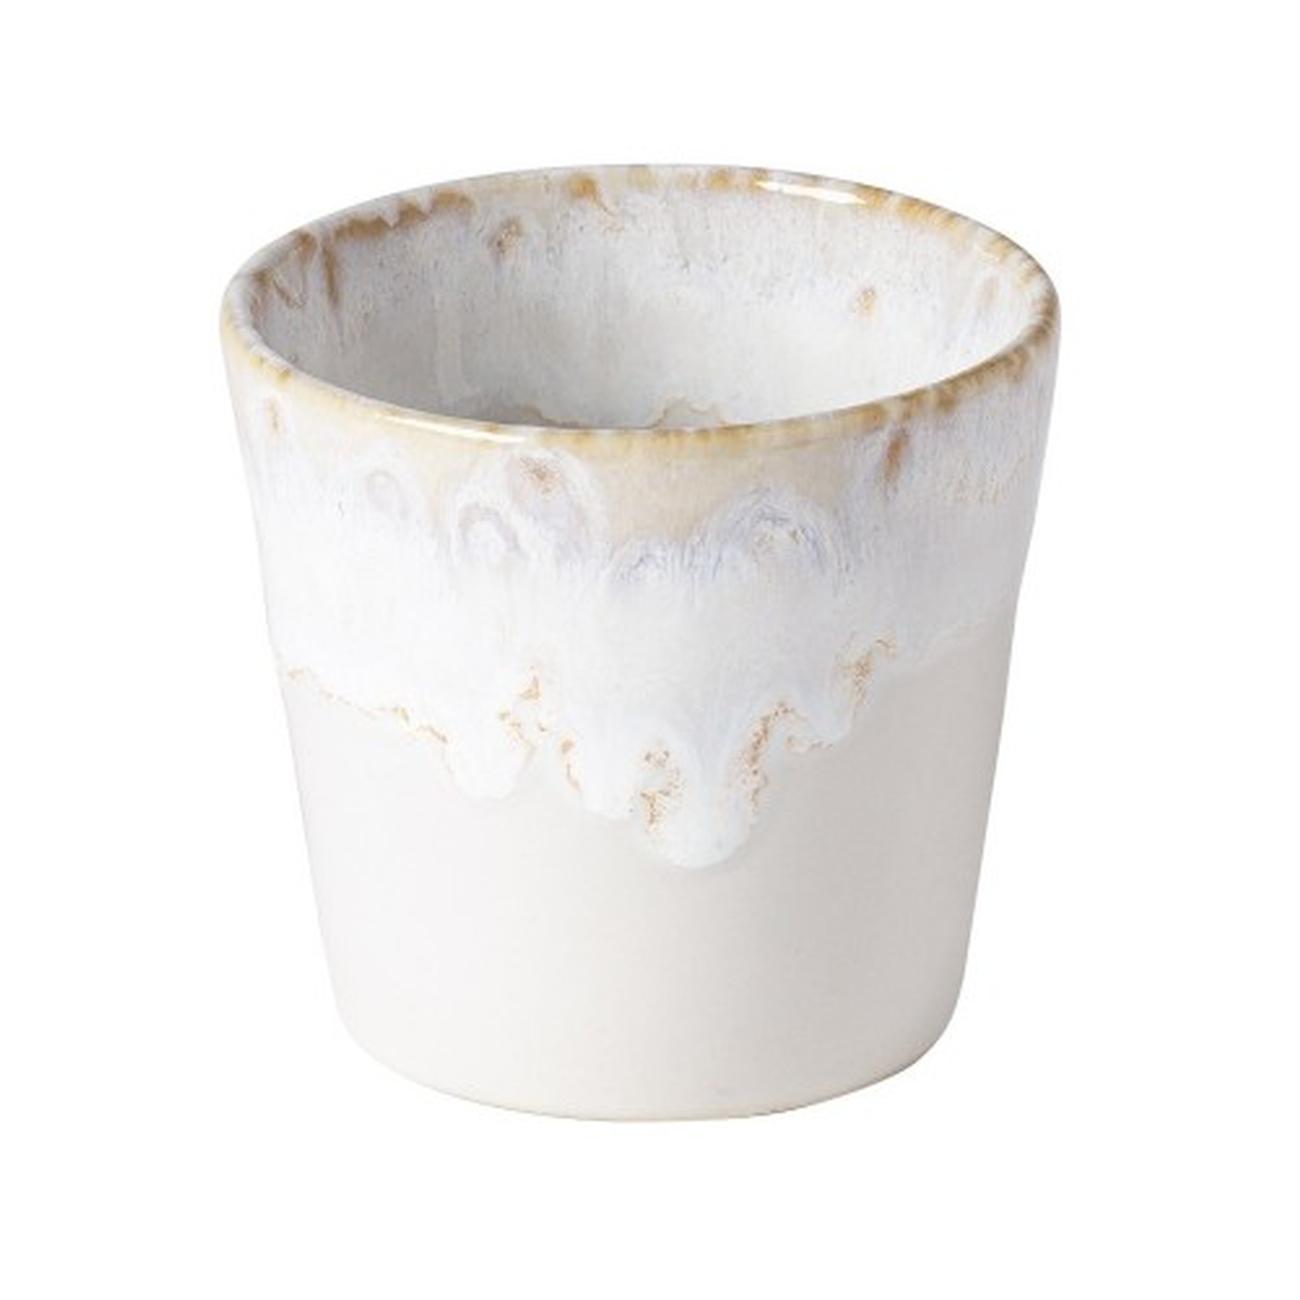 costa-nova-grespresso-lungo-cafe-cup-0-2l-white - Costa Nova Grespresso Lungo Espresso Cup-0.2L White